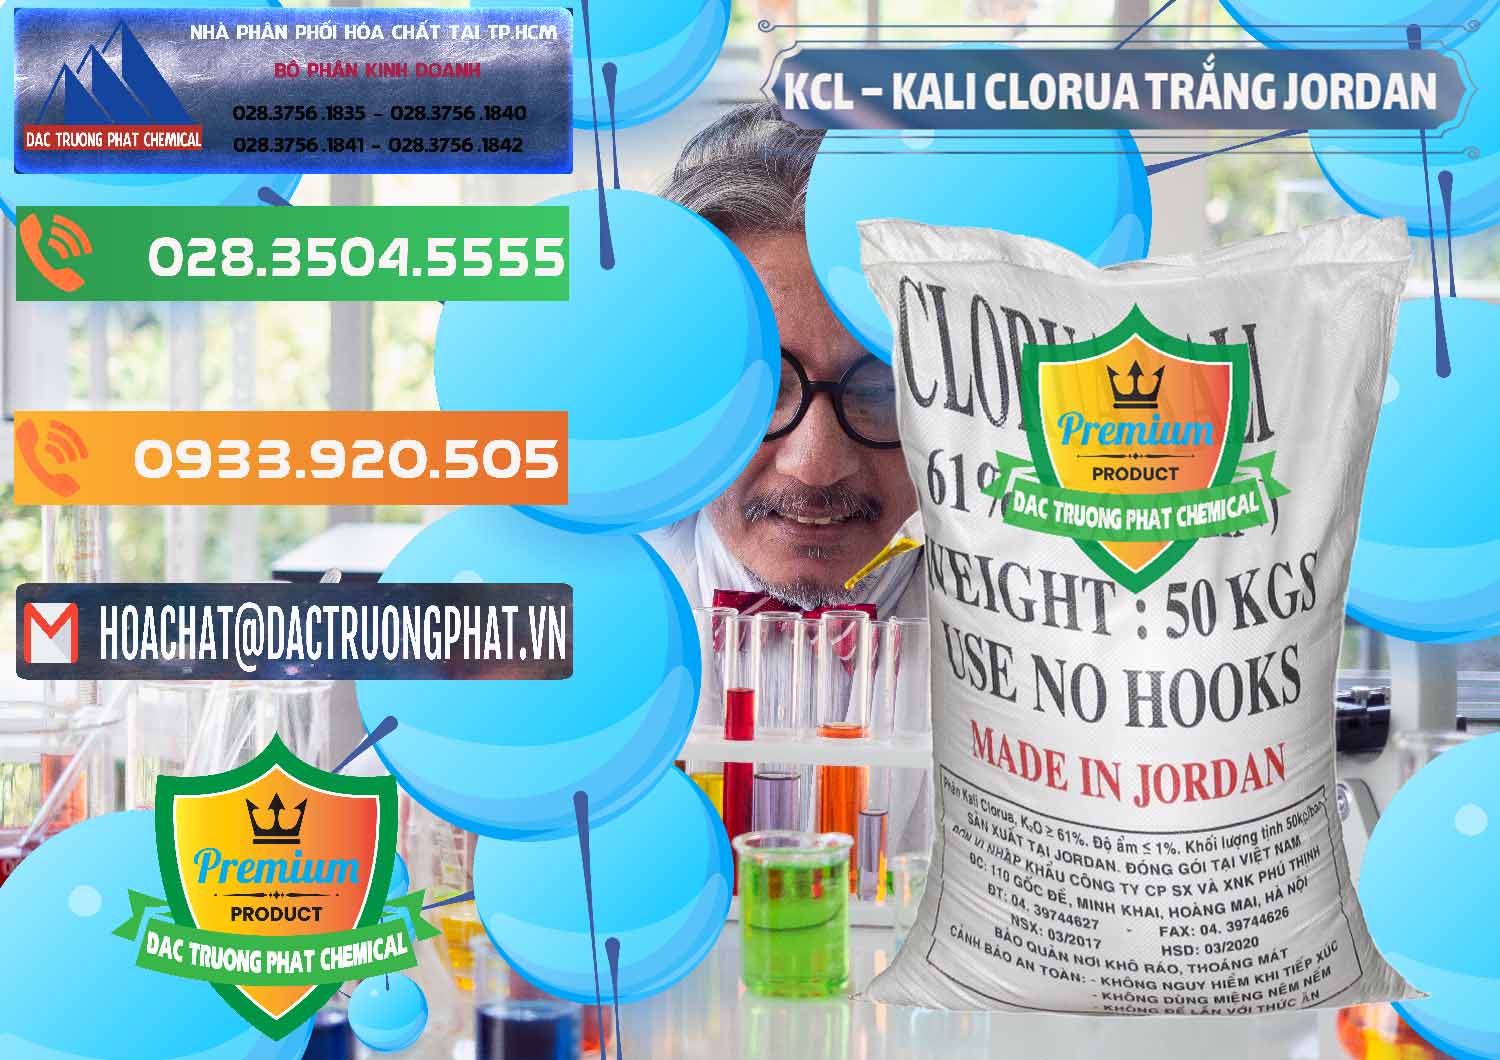 Nơi chuyên bán và phân phối KCL – Kali Clorua Trắng Jordan - 0088 - Cty nhập khẩu - cung cấp hóa chất tại TP.HCM - hoachatxulynuoc.com.vn